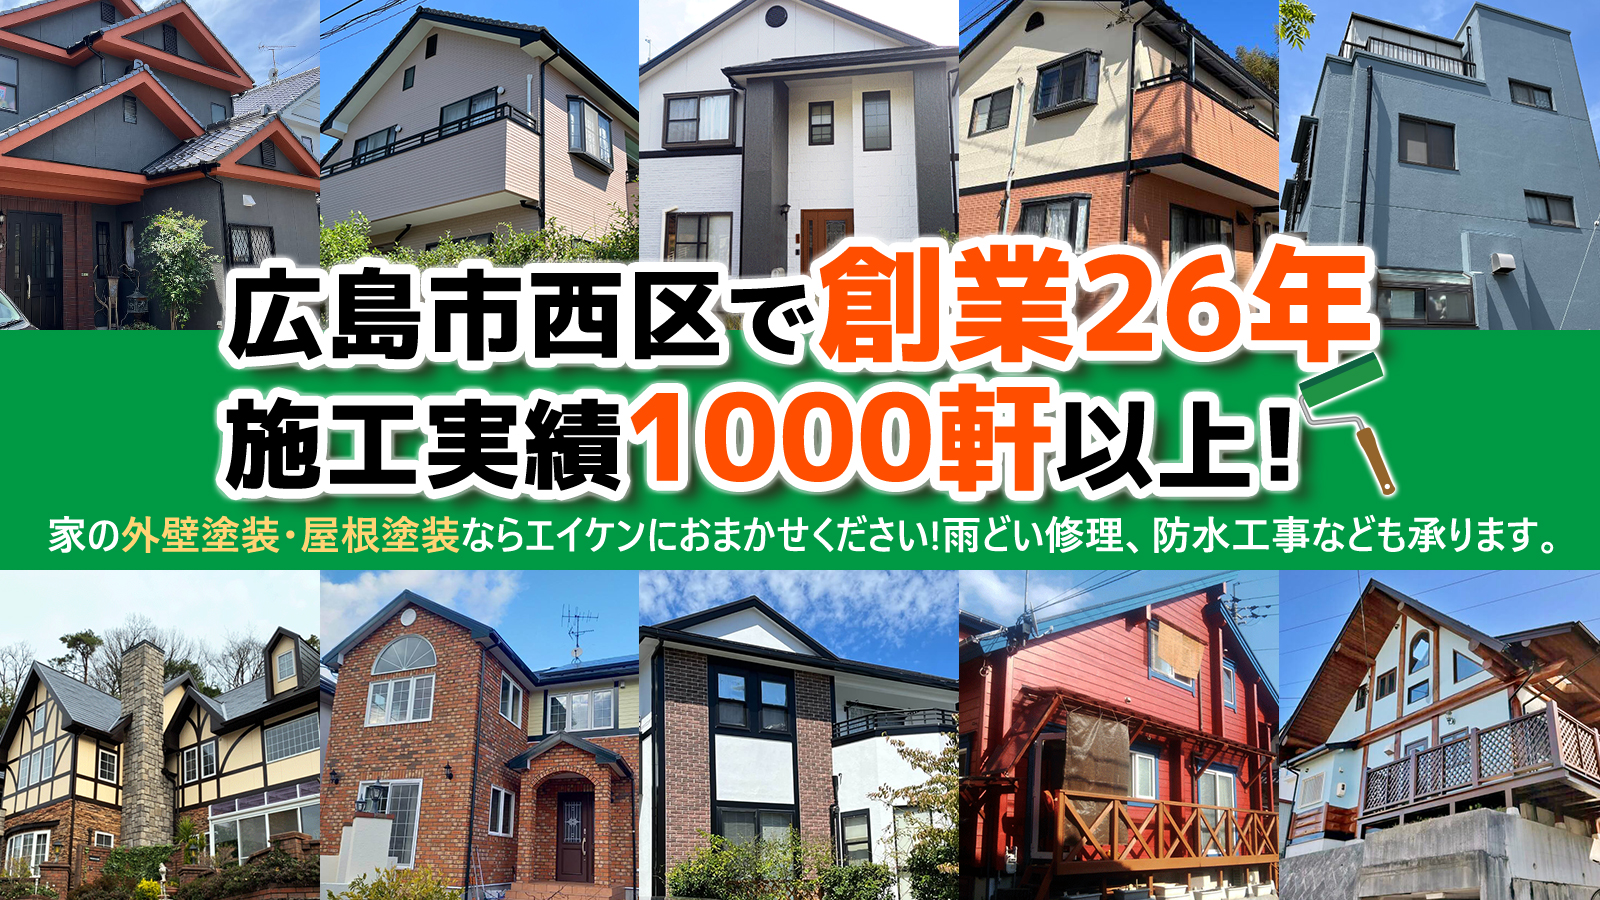 エイケンは広島市西区で創業26年、施工実績1000軒以上